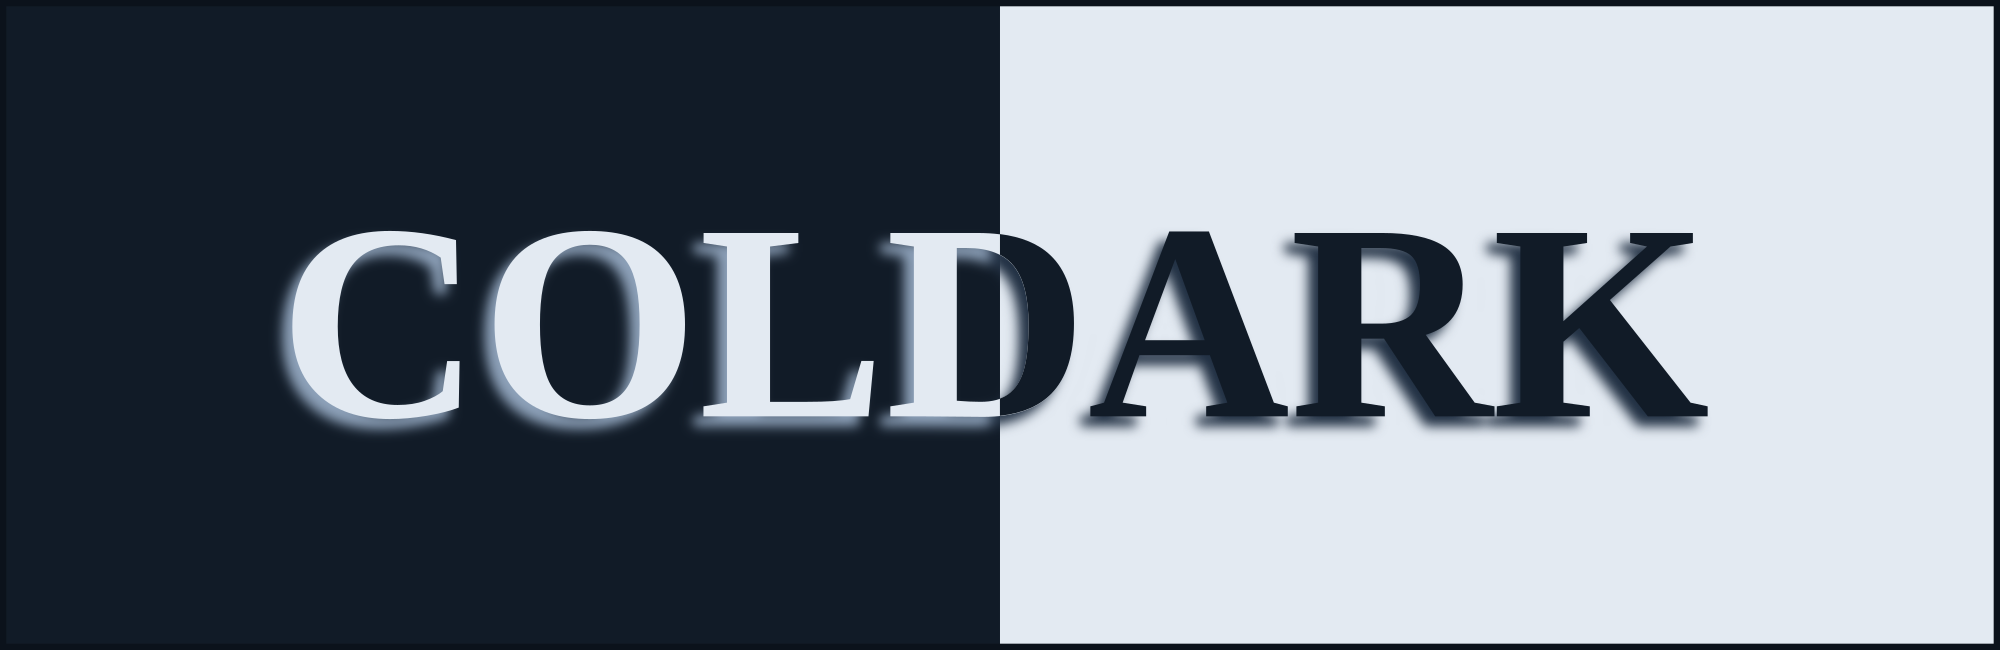 Coldark Banner